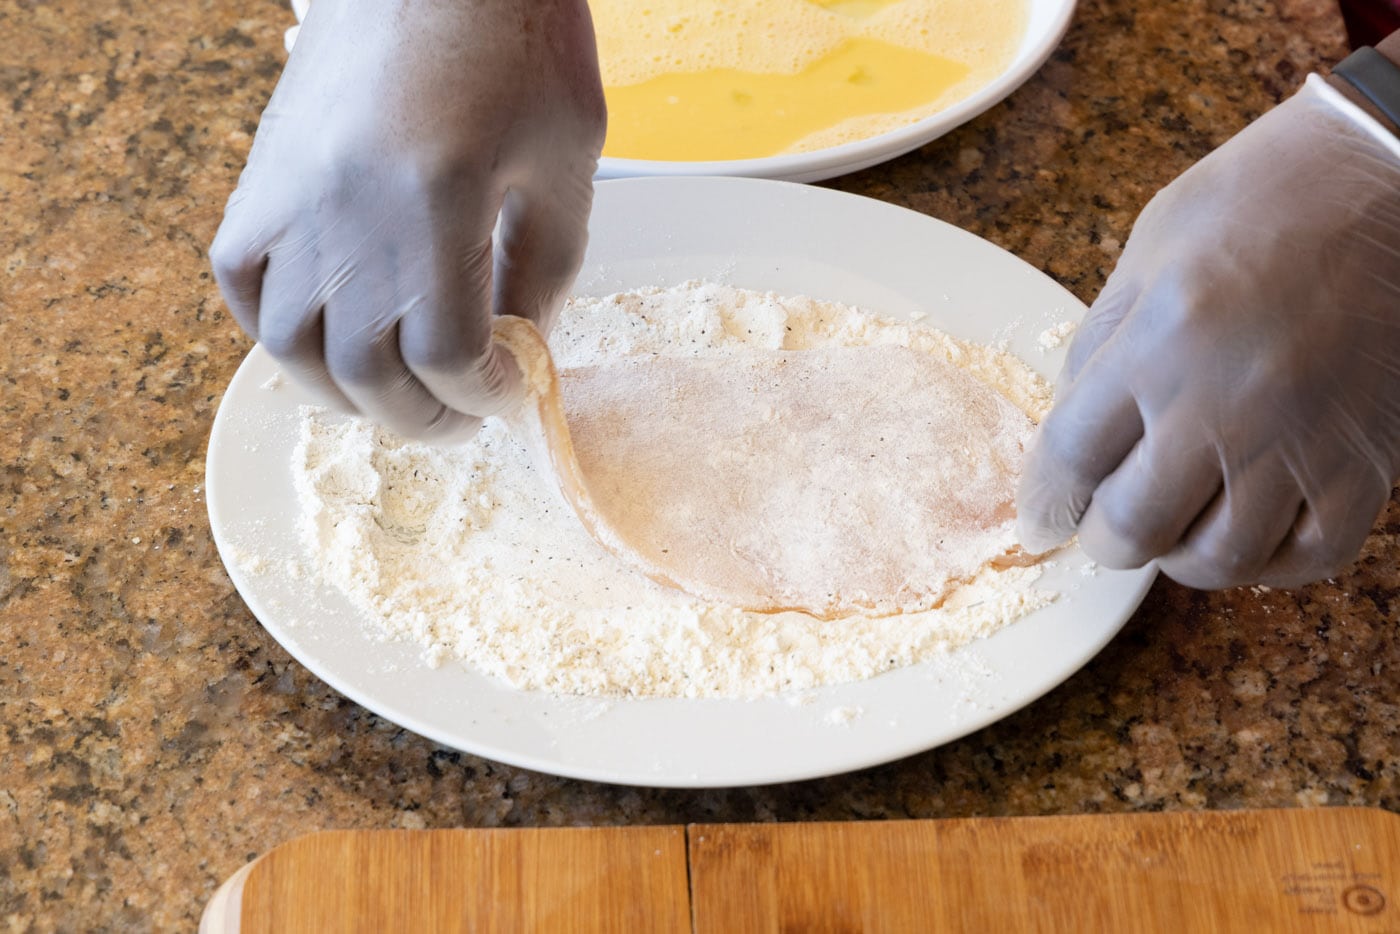 hand dredging chicken cutlet in flour